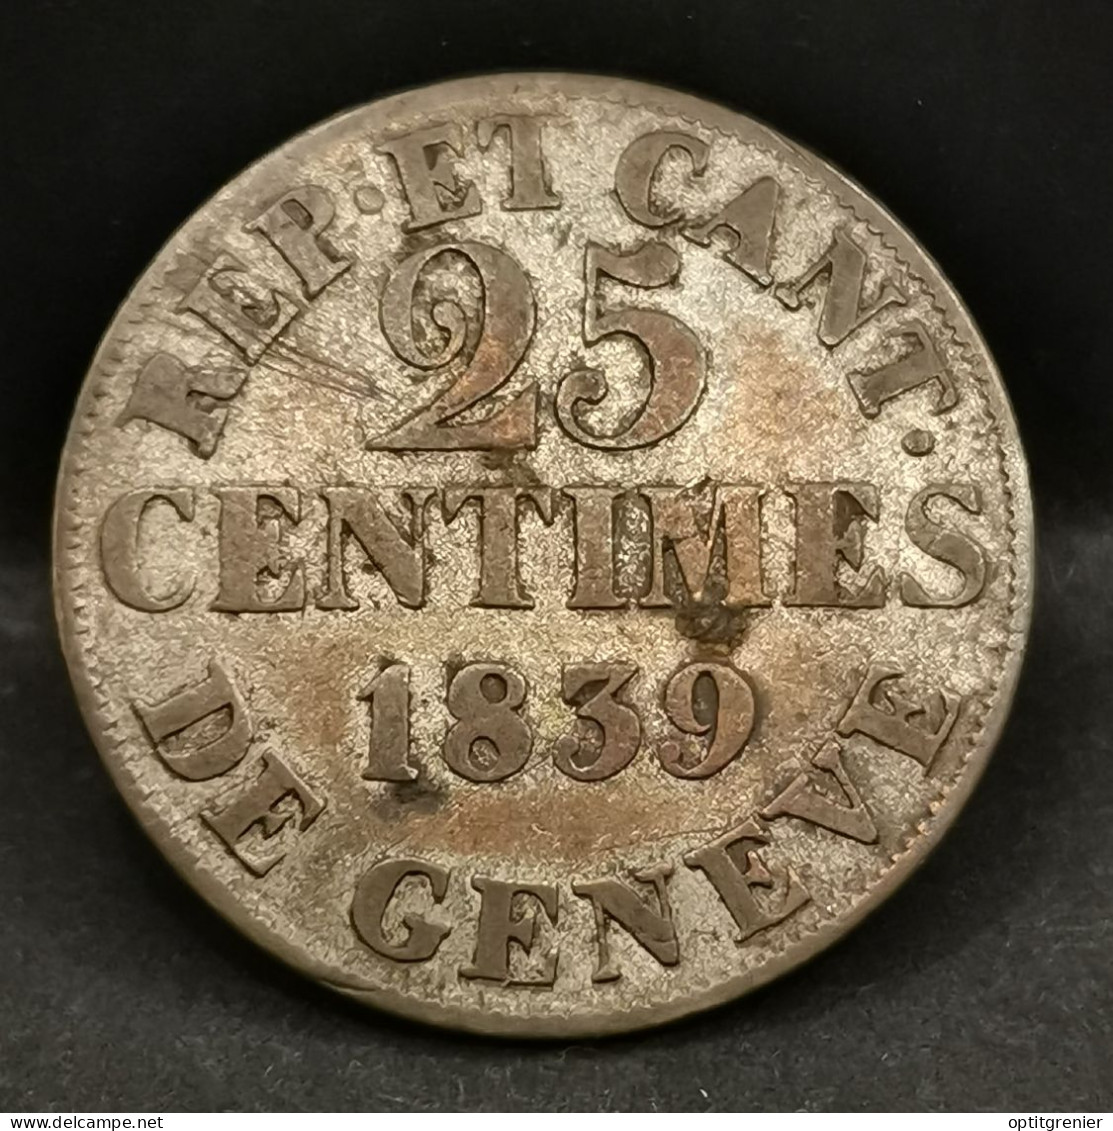 25 CENTIMES 1839 BILLON ARGENT CANTON DE GENEVE SUISSE / SWITZERLAND - Monetazione Cantonale